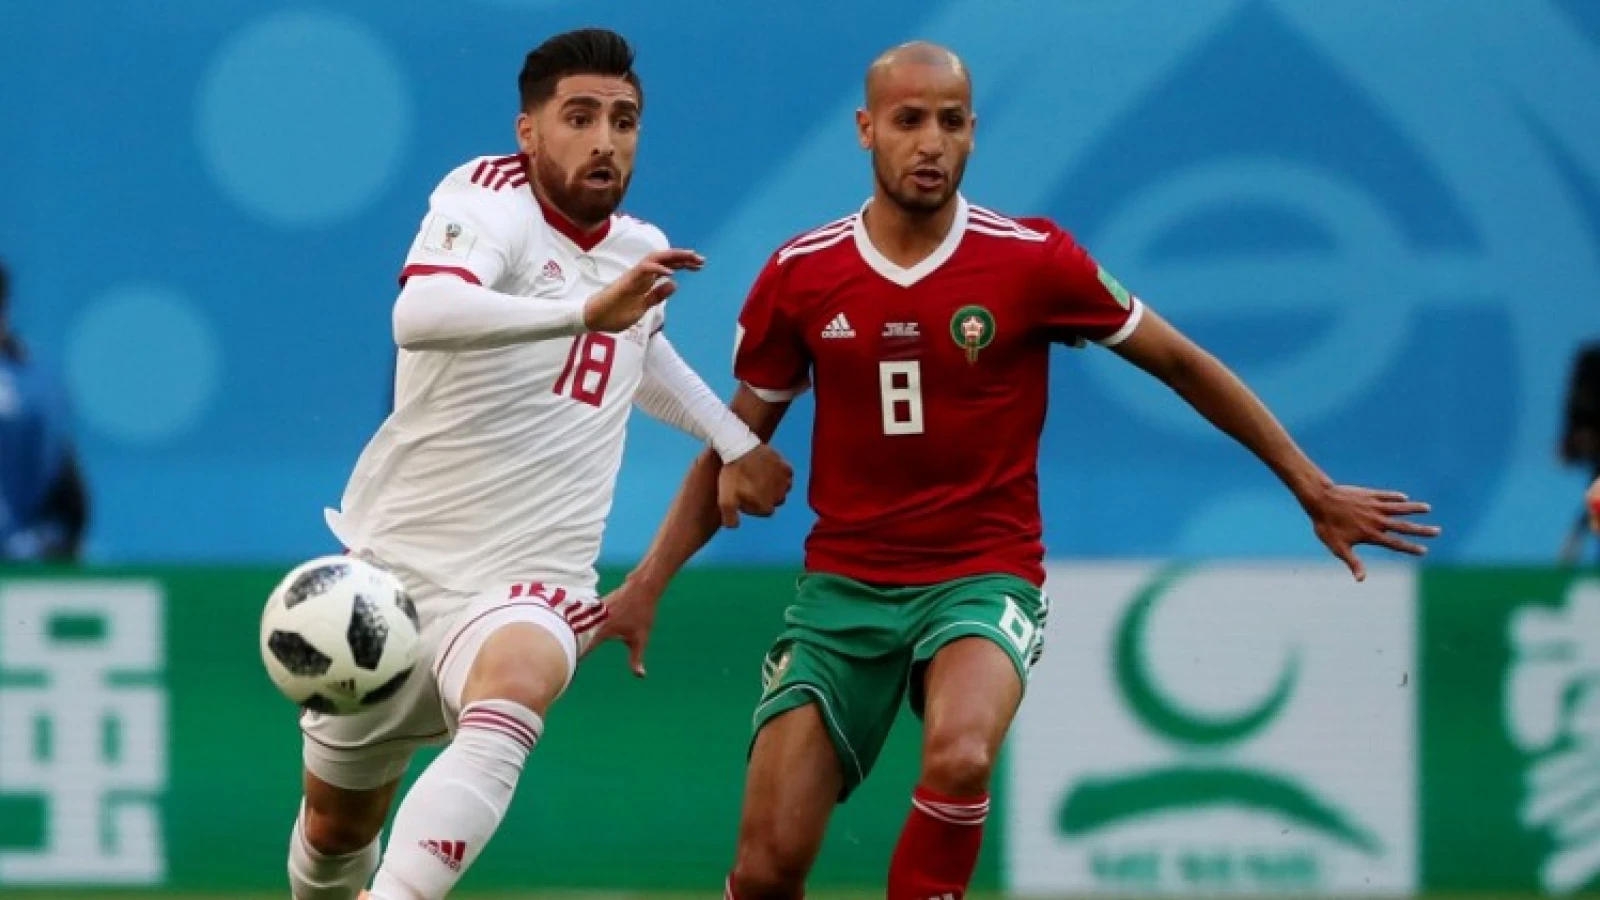 Marokko met basisklant El Ahmadi verliest openingswedstrijd in ijzersterke poule 